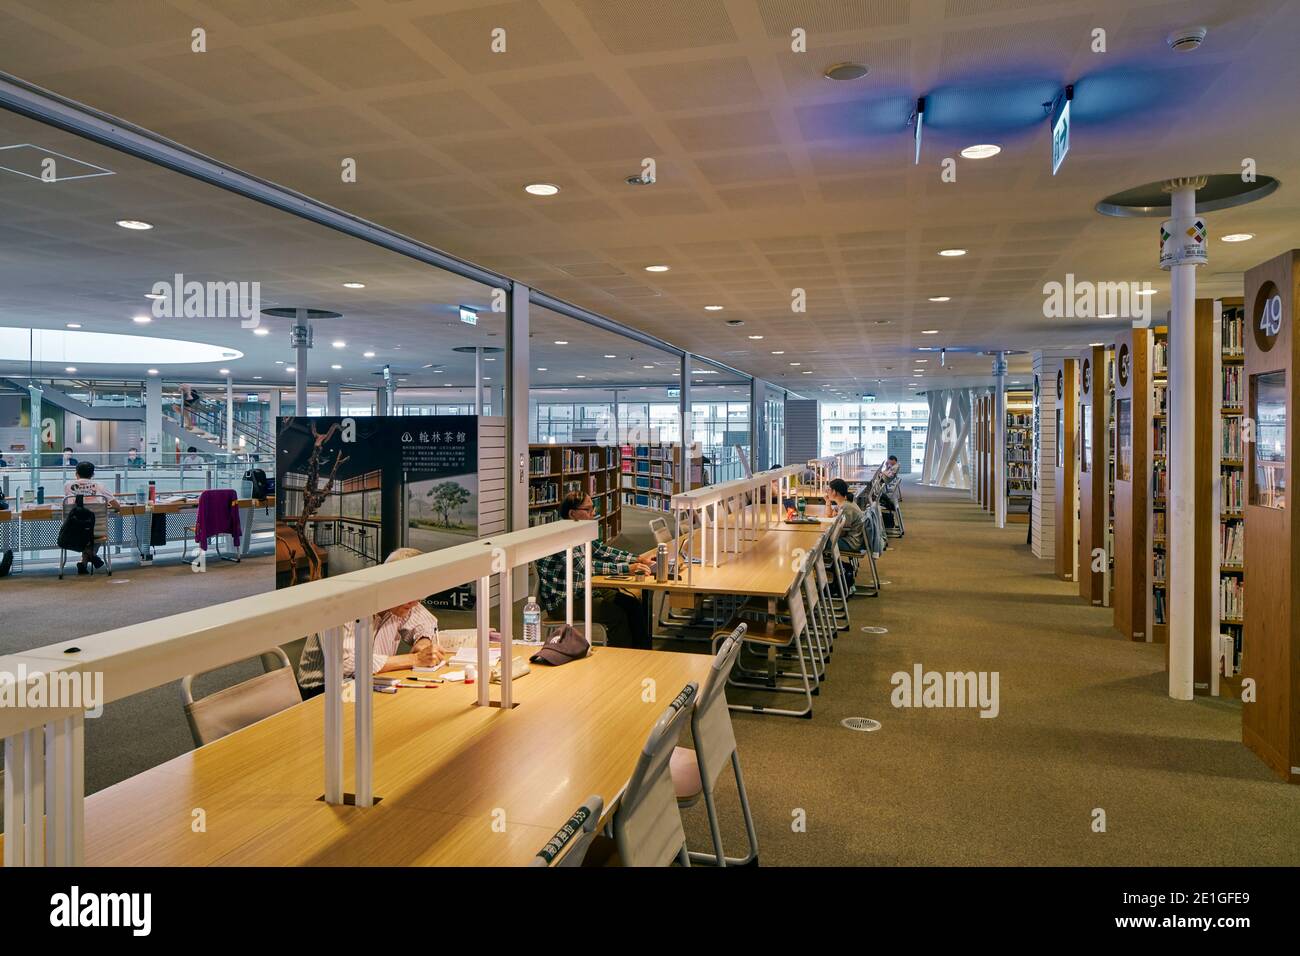 Vue intérieure de la bibliothèque publique principale de Kaohsiung à Kaohsiung, Taïwan. Terminé en 2014. Banque D'Images